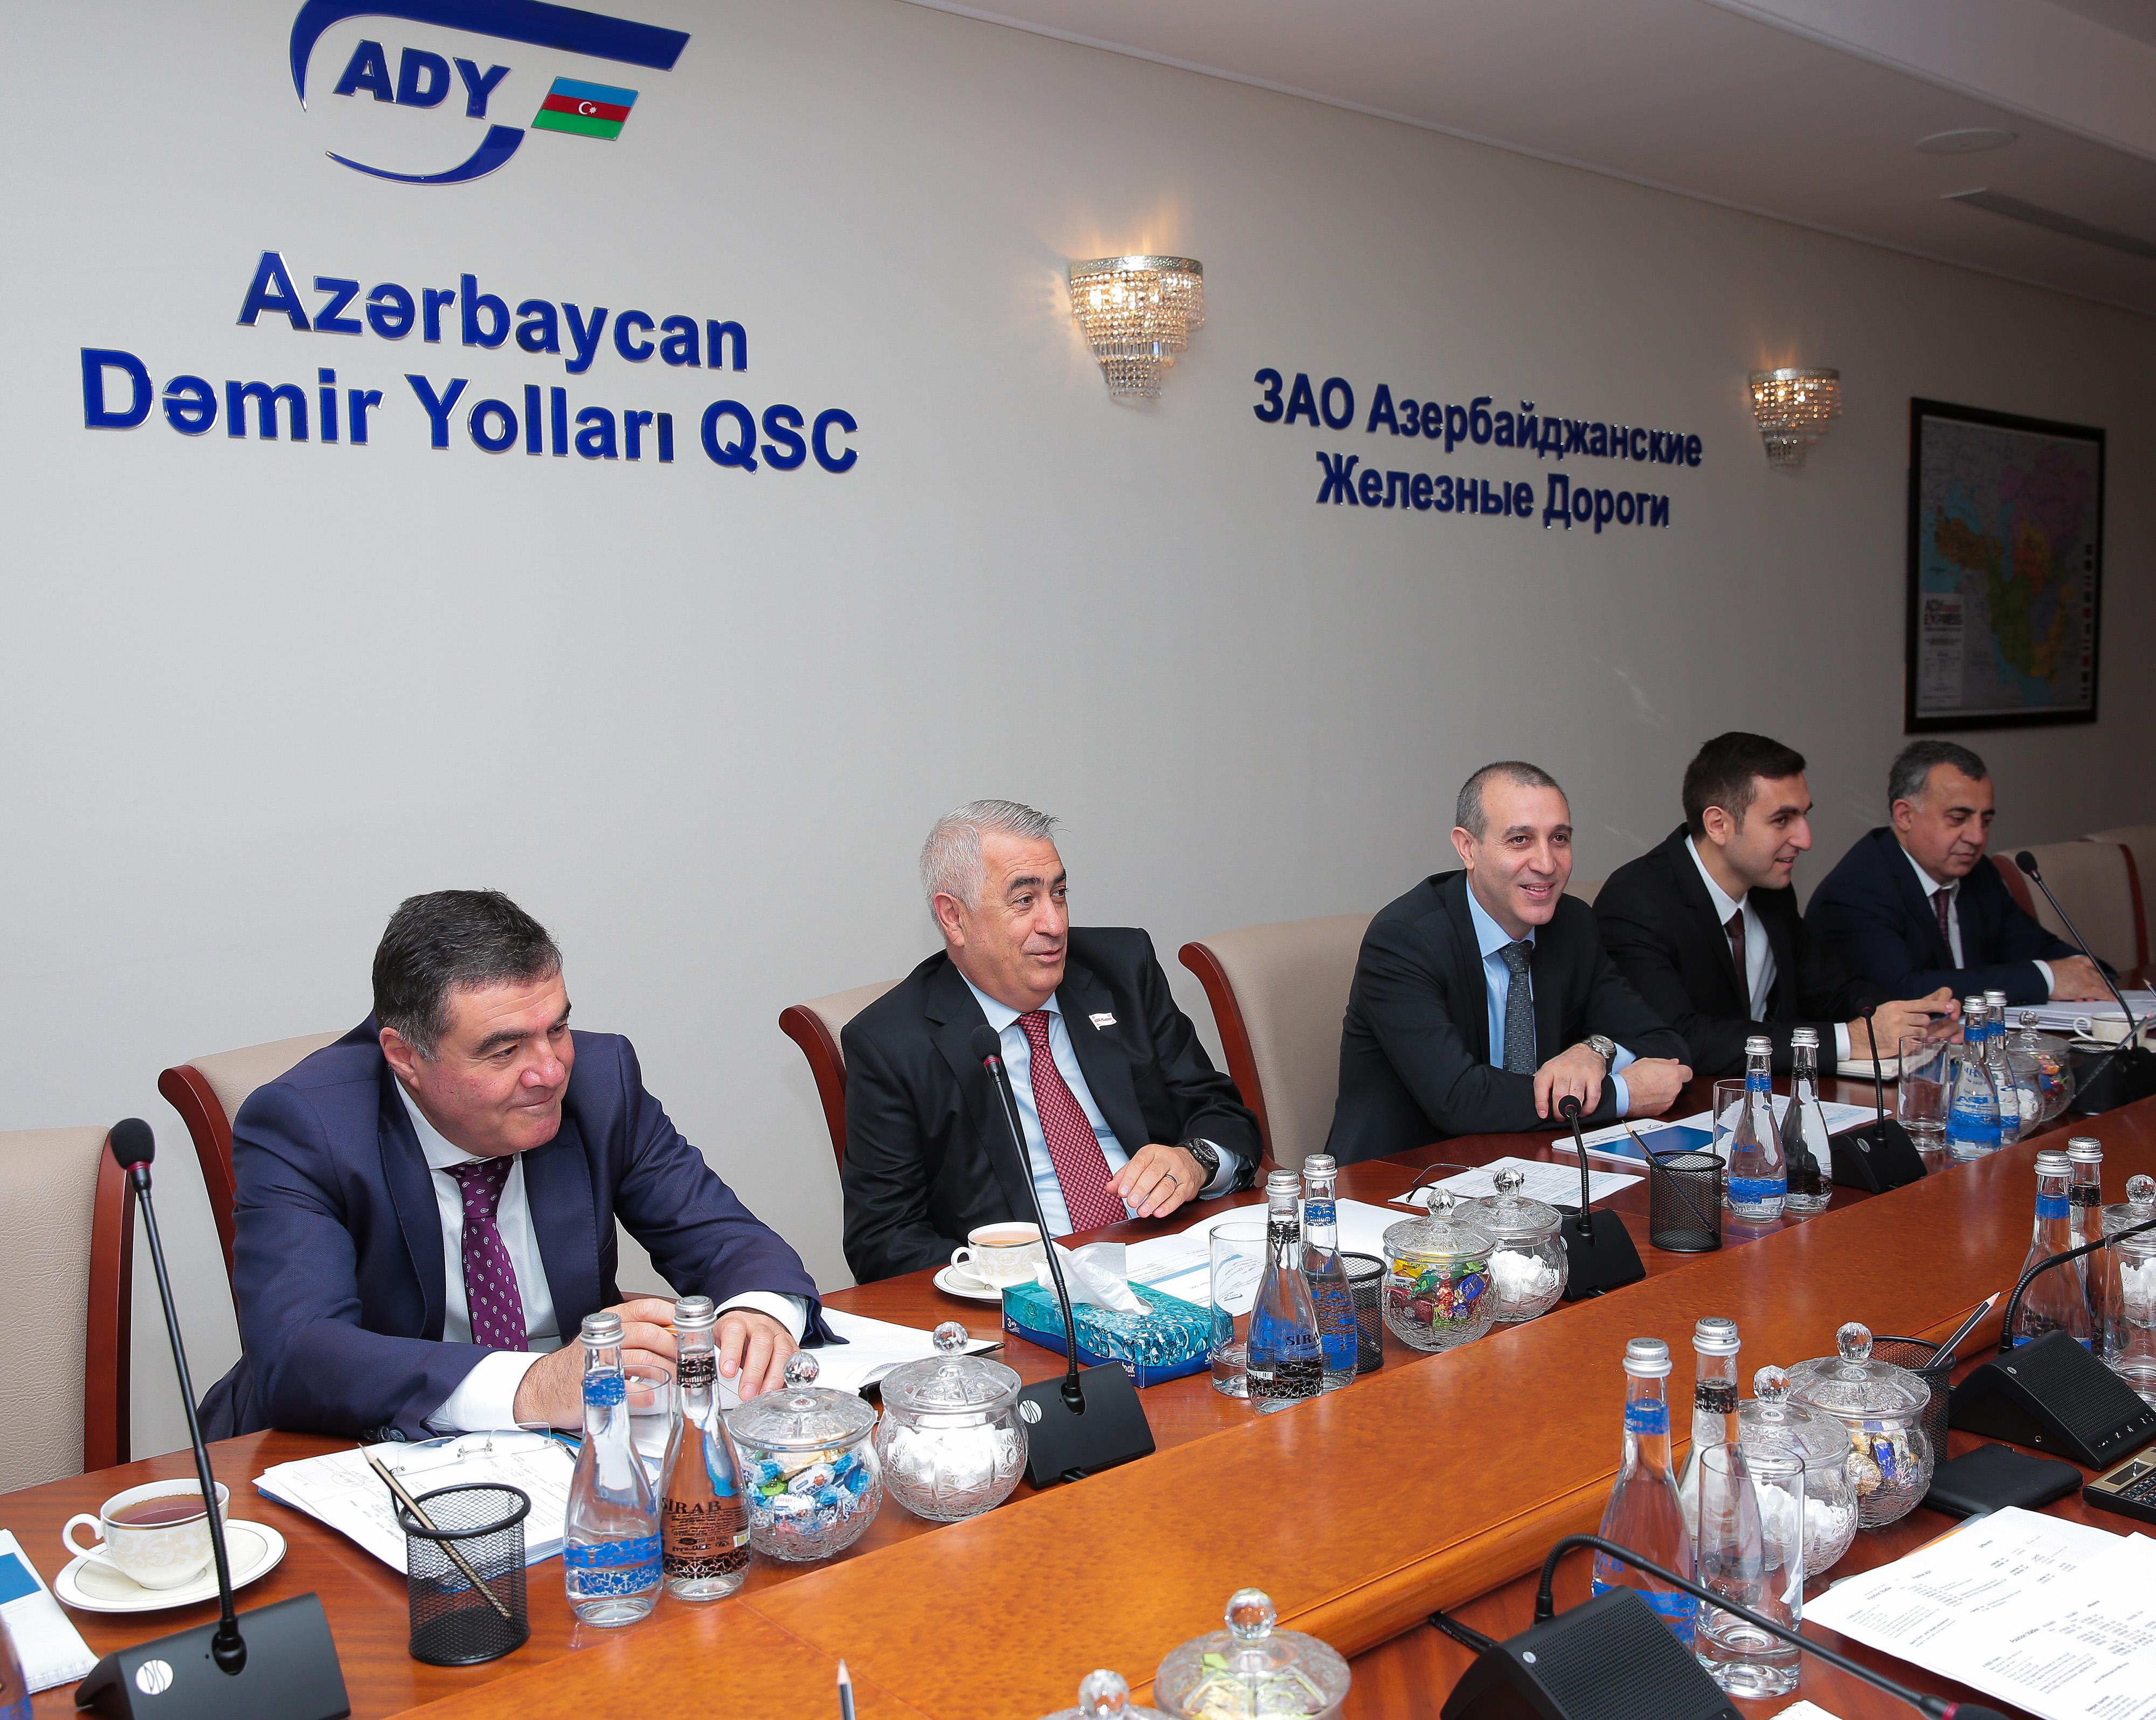 Azərbaycan Dəmir Yolları QSC ilə Stadler Rail Group şirkəti arasında əlaqələr genişləndirilir-  FOTO